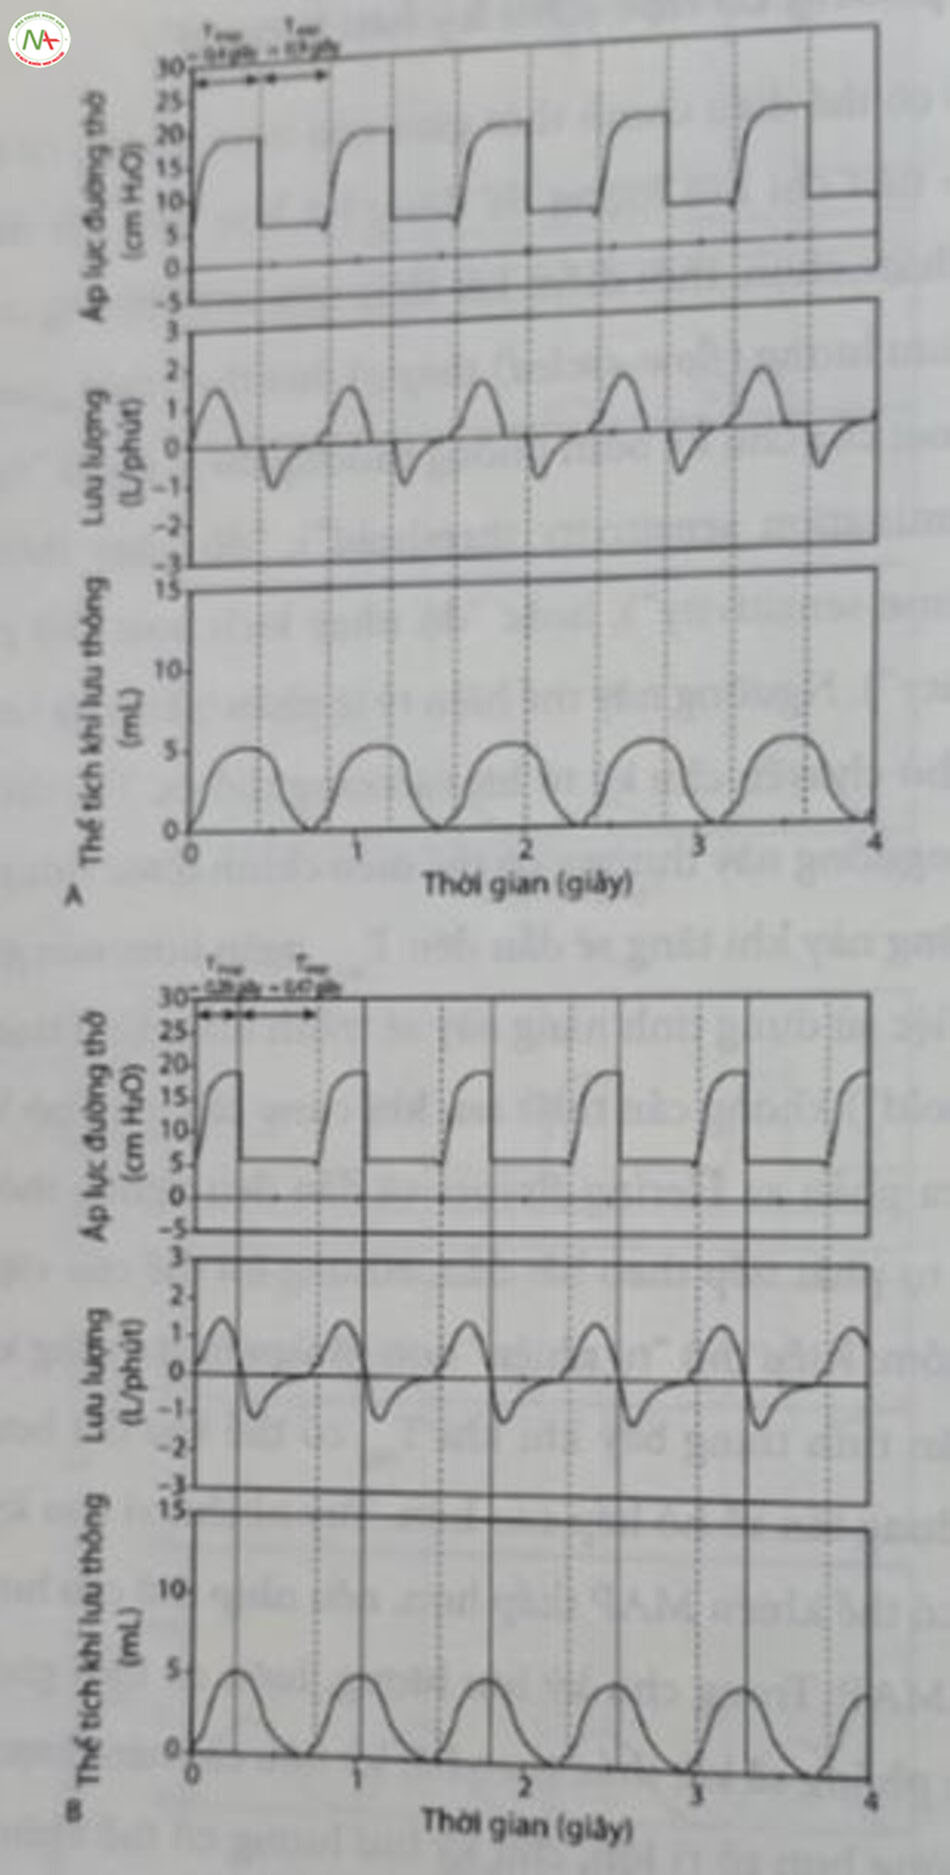 Hình 12.13 Chu kỳ bơm phồng cơ học (chu kỳ lưu lượng, “kích hoạt thở ra”). (A) Thông khí giới hạn áp lực đồng bộ, chế độ trợ giúp/kiểm soát: Áp lực hít vào đỉnh (PIP)/áp lực dưỡng cuối thì thở ra (PEEP) 18/6 cm H,O, thời gian hút vào (T) là 0,4 giây, tần số họ hấp tự phát 75 nhịp thở/phút dẫn đến thời gian thở ra (T...) là 0,4 giây, TinspiTe exp Lưu ý: Thở ra hoàn toàn bị ngăn cản bởi thời gian bơm phồng cơ học. (B) Thông khí giới hạn áp lực đồng bộ; chế độ trợ giúp/kiểm soát với chu kỳ lưu lượng (được gọi là thông khí hỗ trợ áp lực trong một số thiết bị), độ nhạy kết thúc 40% của lưu lượng đỉnh: PIP/ exp PEEP 18/6 cm H,O, Tin. 0,4 giây, chấm dứt ở 0,28 giây (các đường nét liền thẳng đứng), hô hấp tự phát tần số 80 nhịp thờ/phút dẫn đến T., là 0,47 giây, Tin Te exp Không còn “giữ hít vào” nữa và thể tích khí lưu thông không thay đổi. inspexp = 1:1,7. Luu y = 1:1.